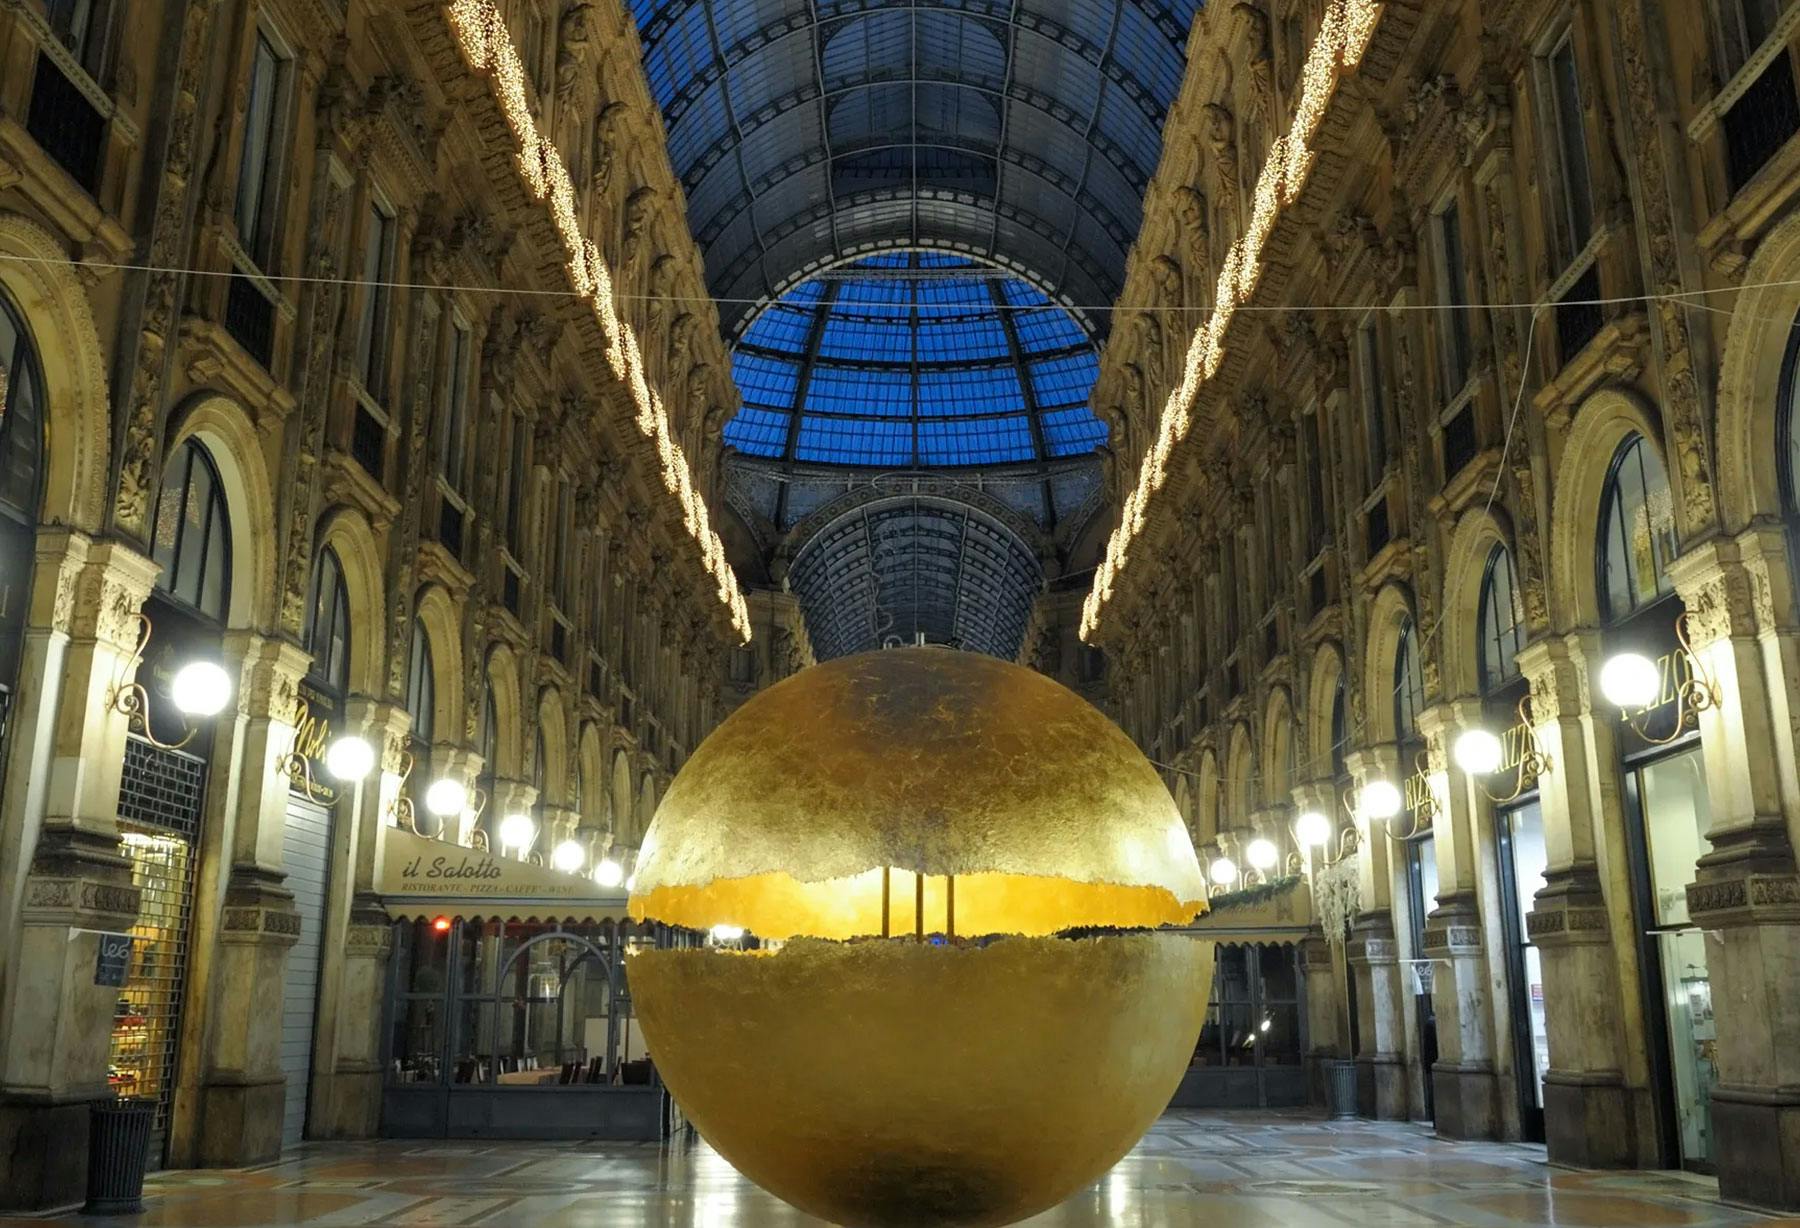 <p>Installazione “PostKrisi” in Galleria Vittorio Emanuele a Milano, una grande sfera appoggiata in terra, luminosa e imponente, che è ricoperta completamente in foglia d&#8217;oro in un abbinamento che unisce un valore del passato alla tecnologia odierna.</p>
